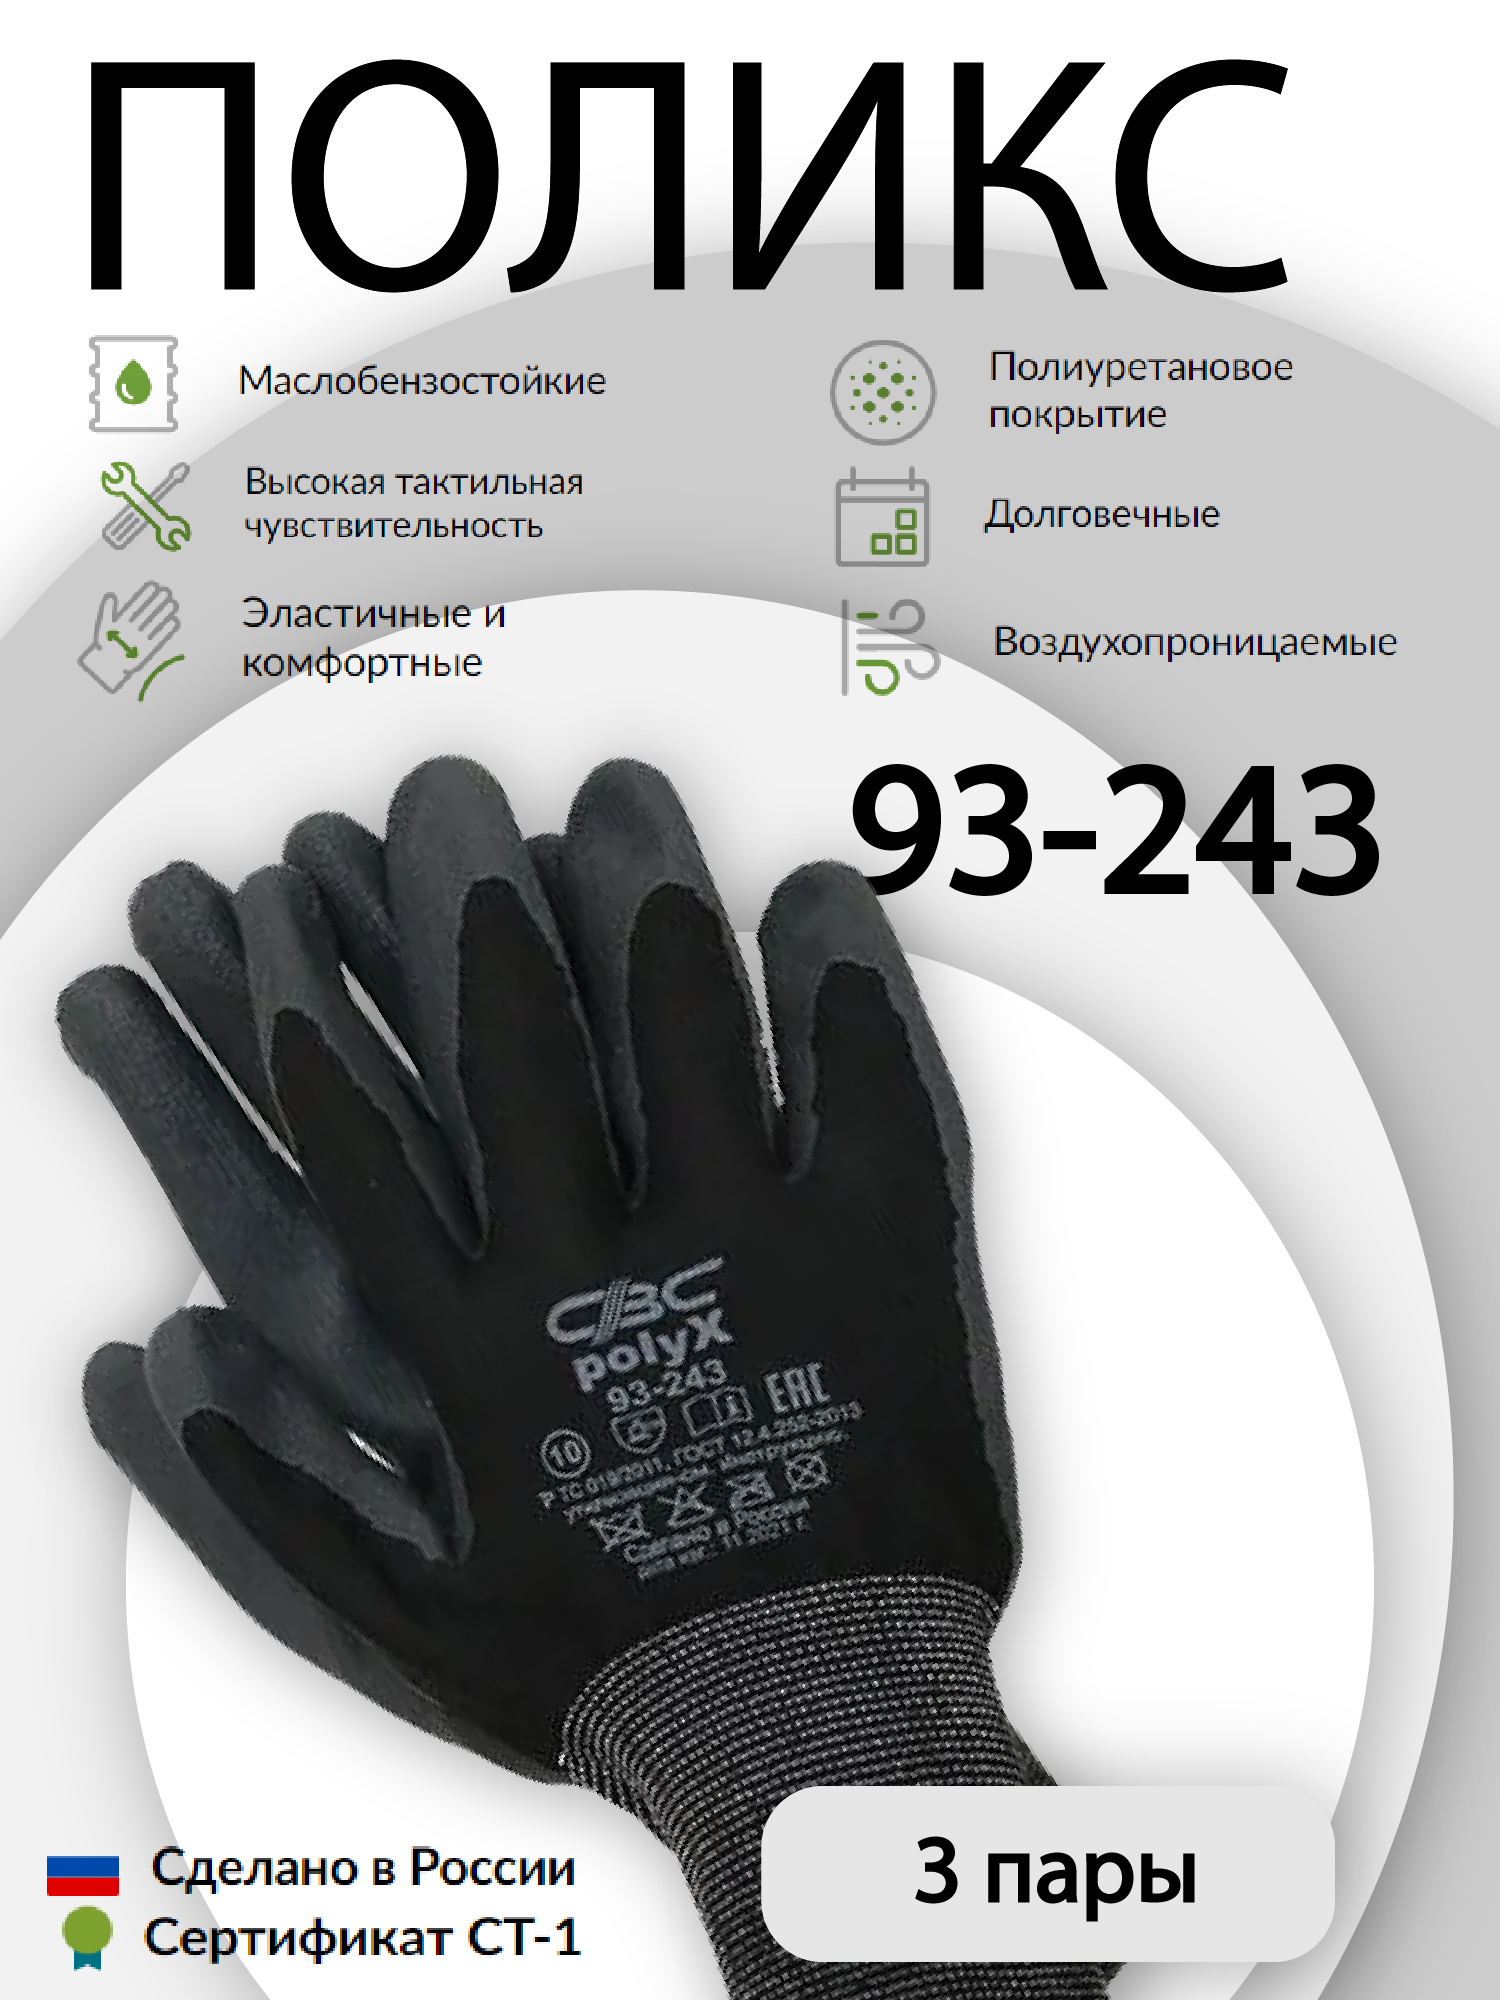 Перчатки защитные СВС ПОЛИКС 93-243 эластичные, с полиуретановым покрытием 3 пары профессиональные эластичные наколенники irwin